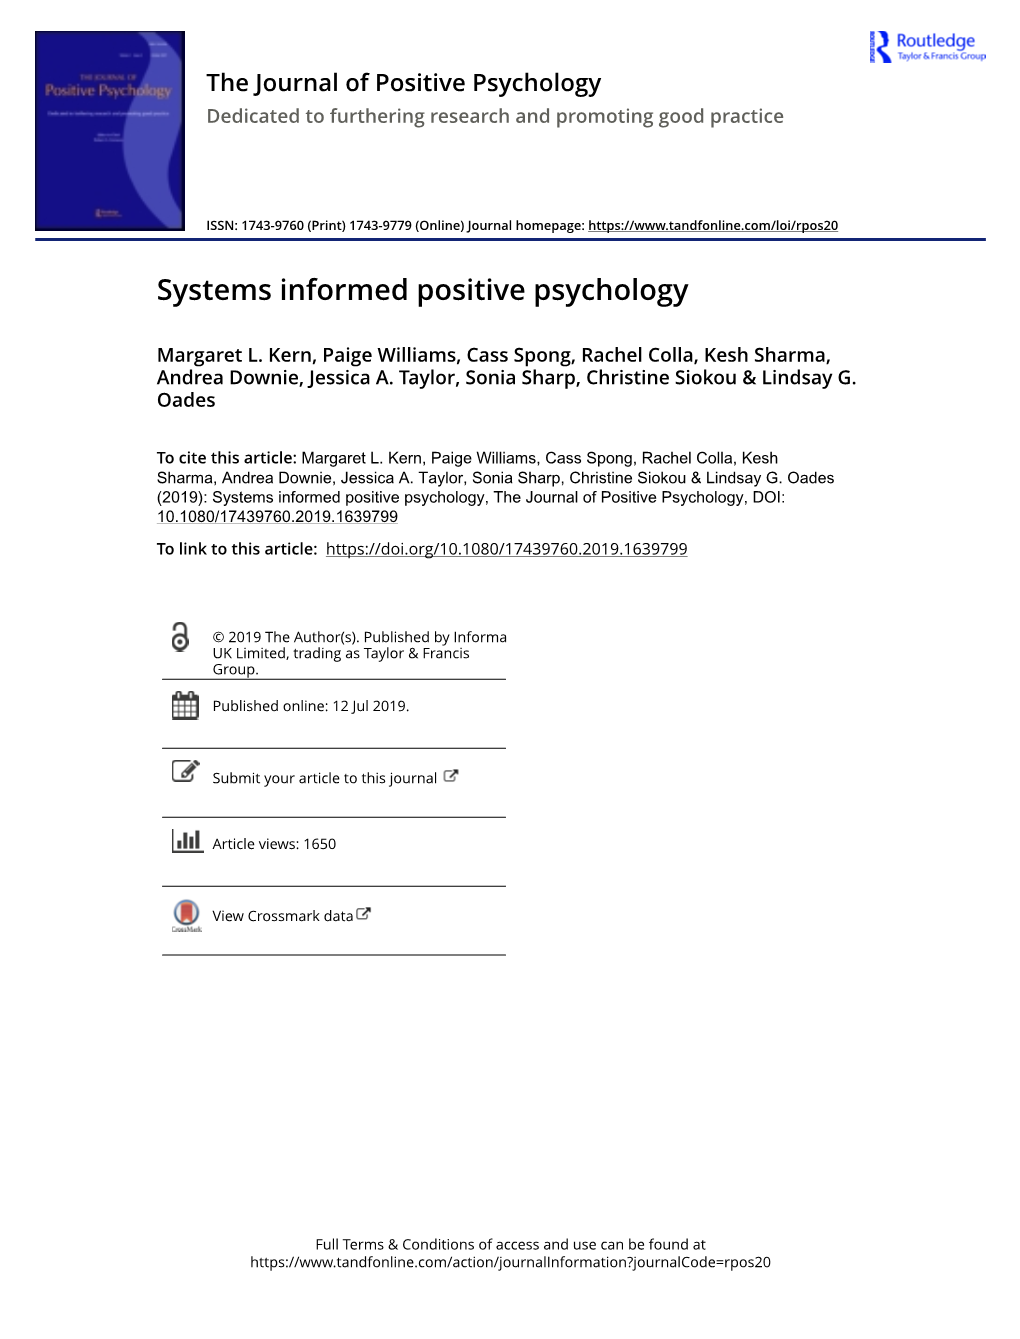 Systems Informed Positive Psychology